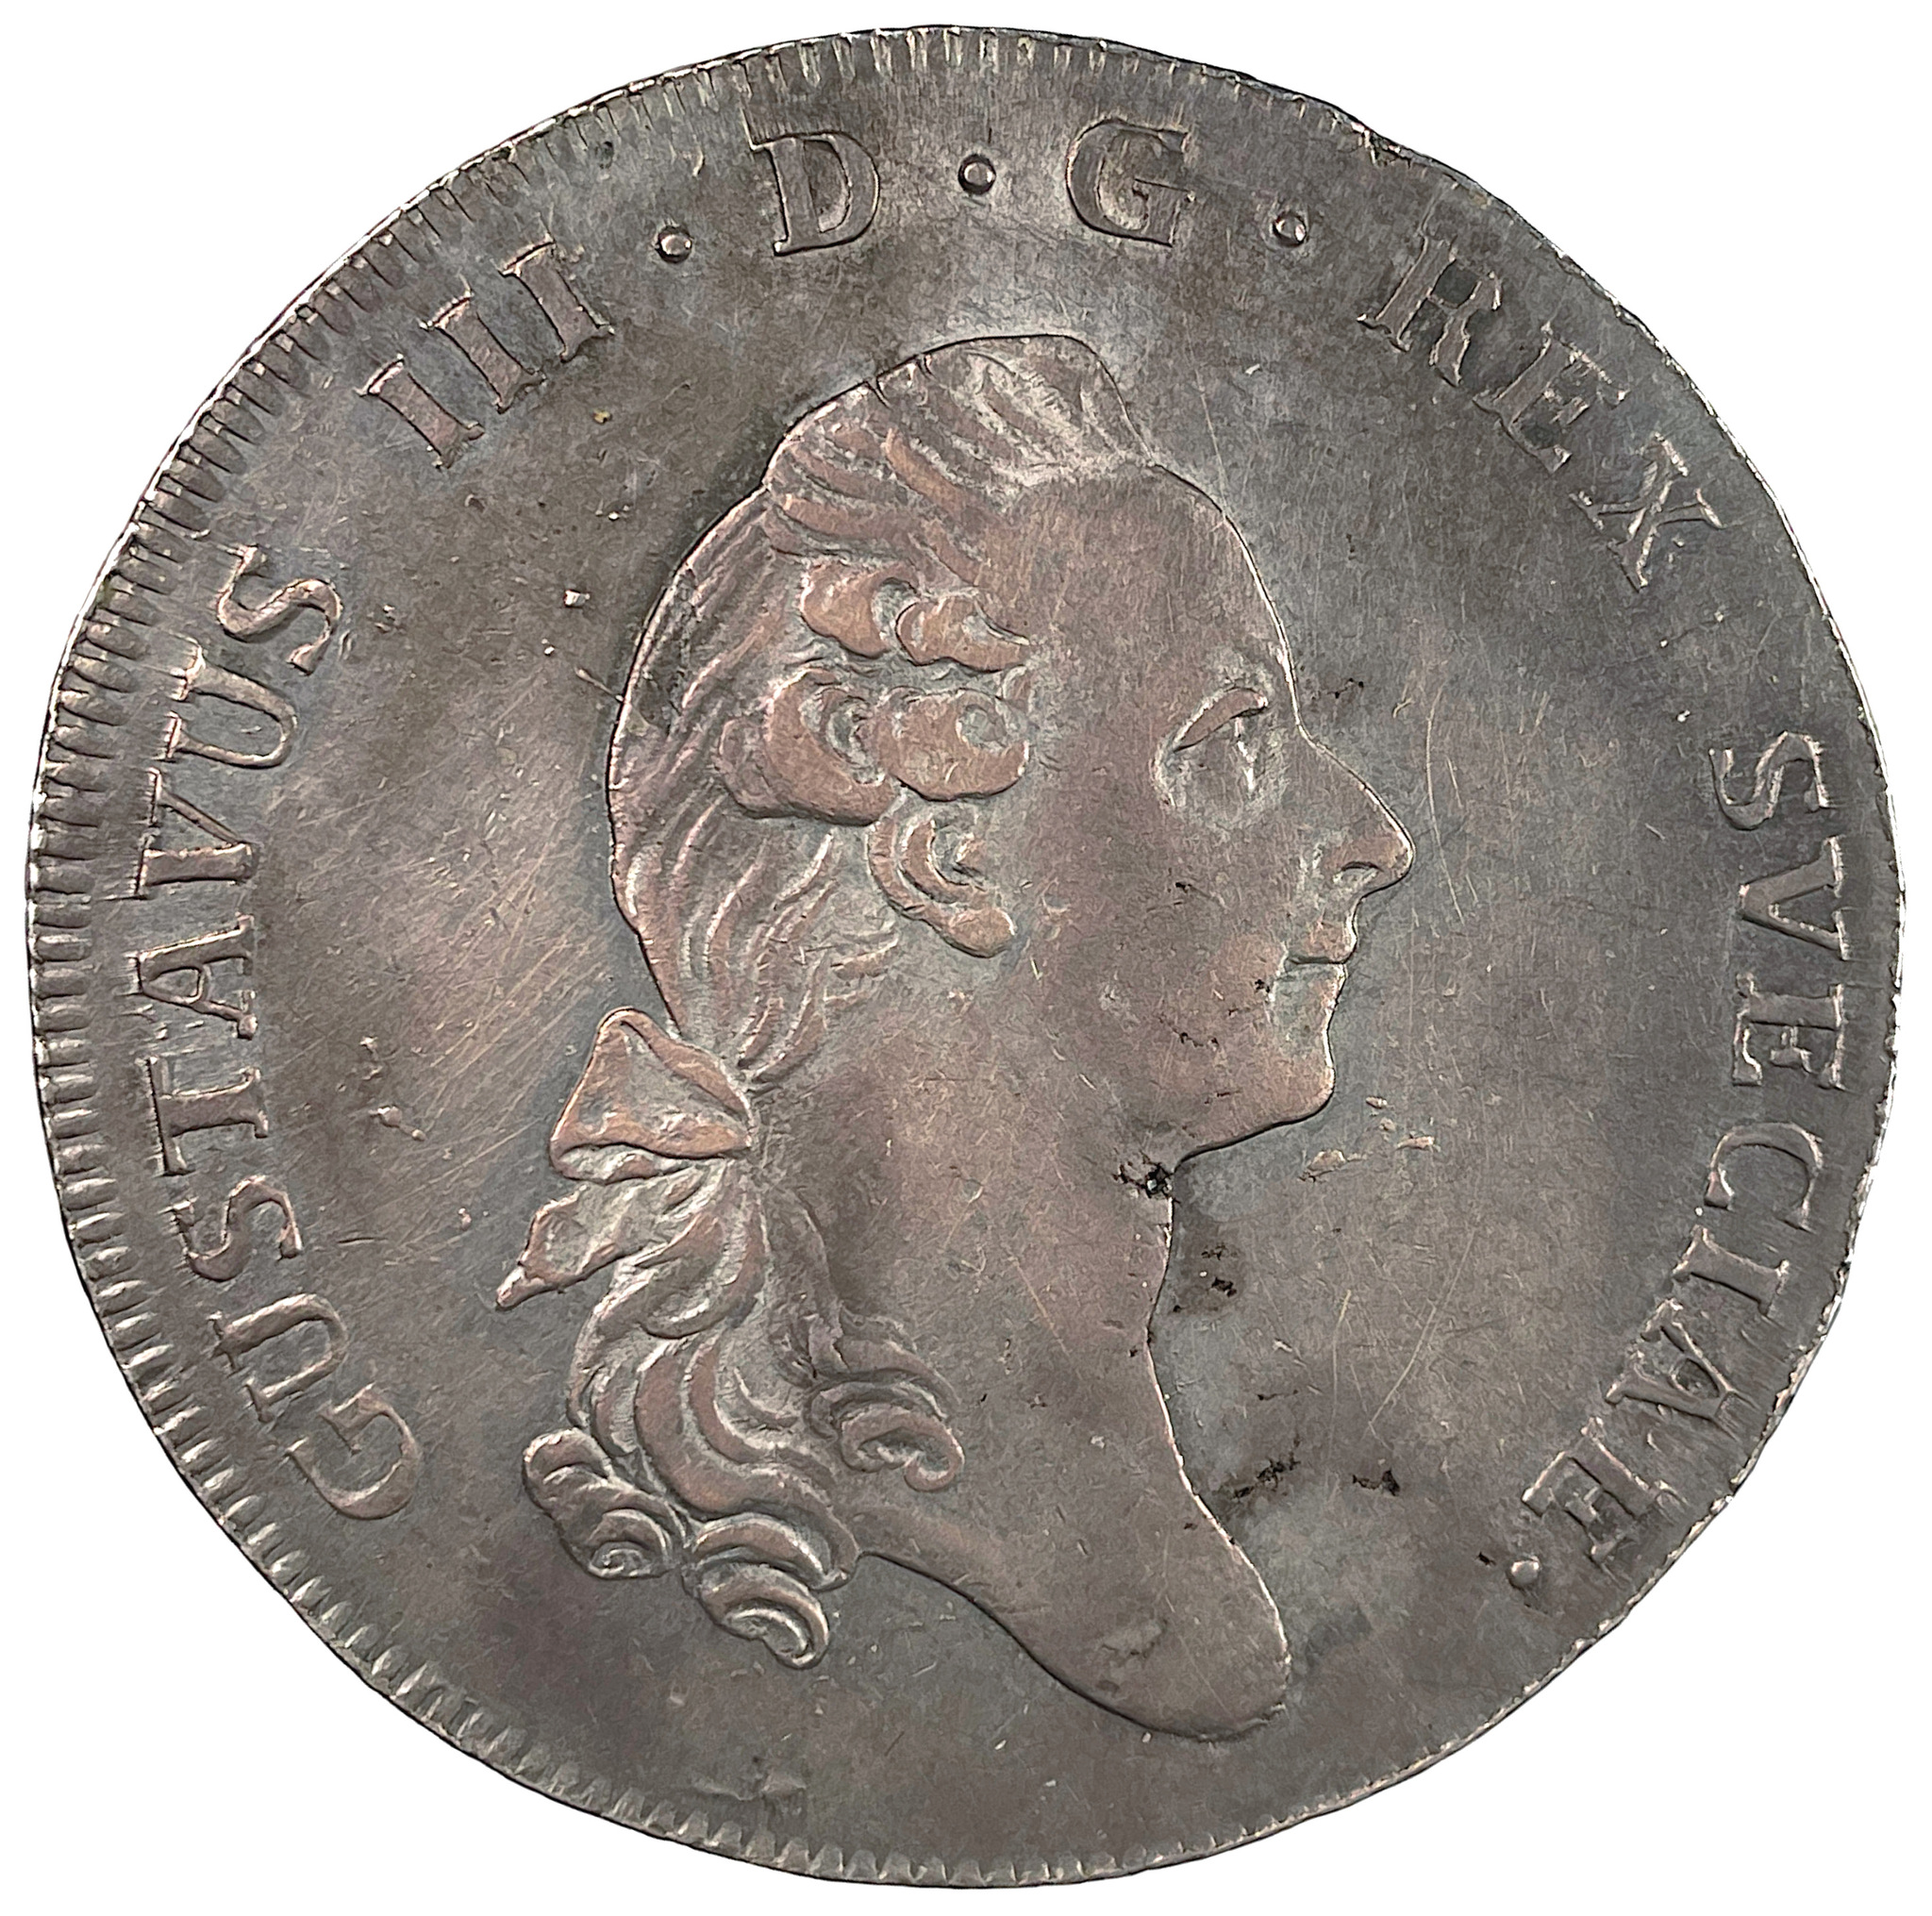 Gustav III, Riksdaler 1777, skarpt och tilltalande exemplar